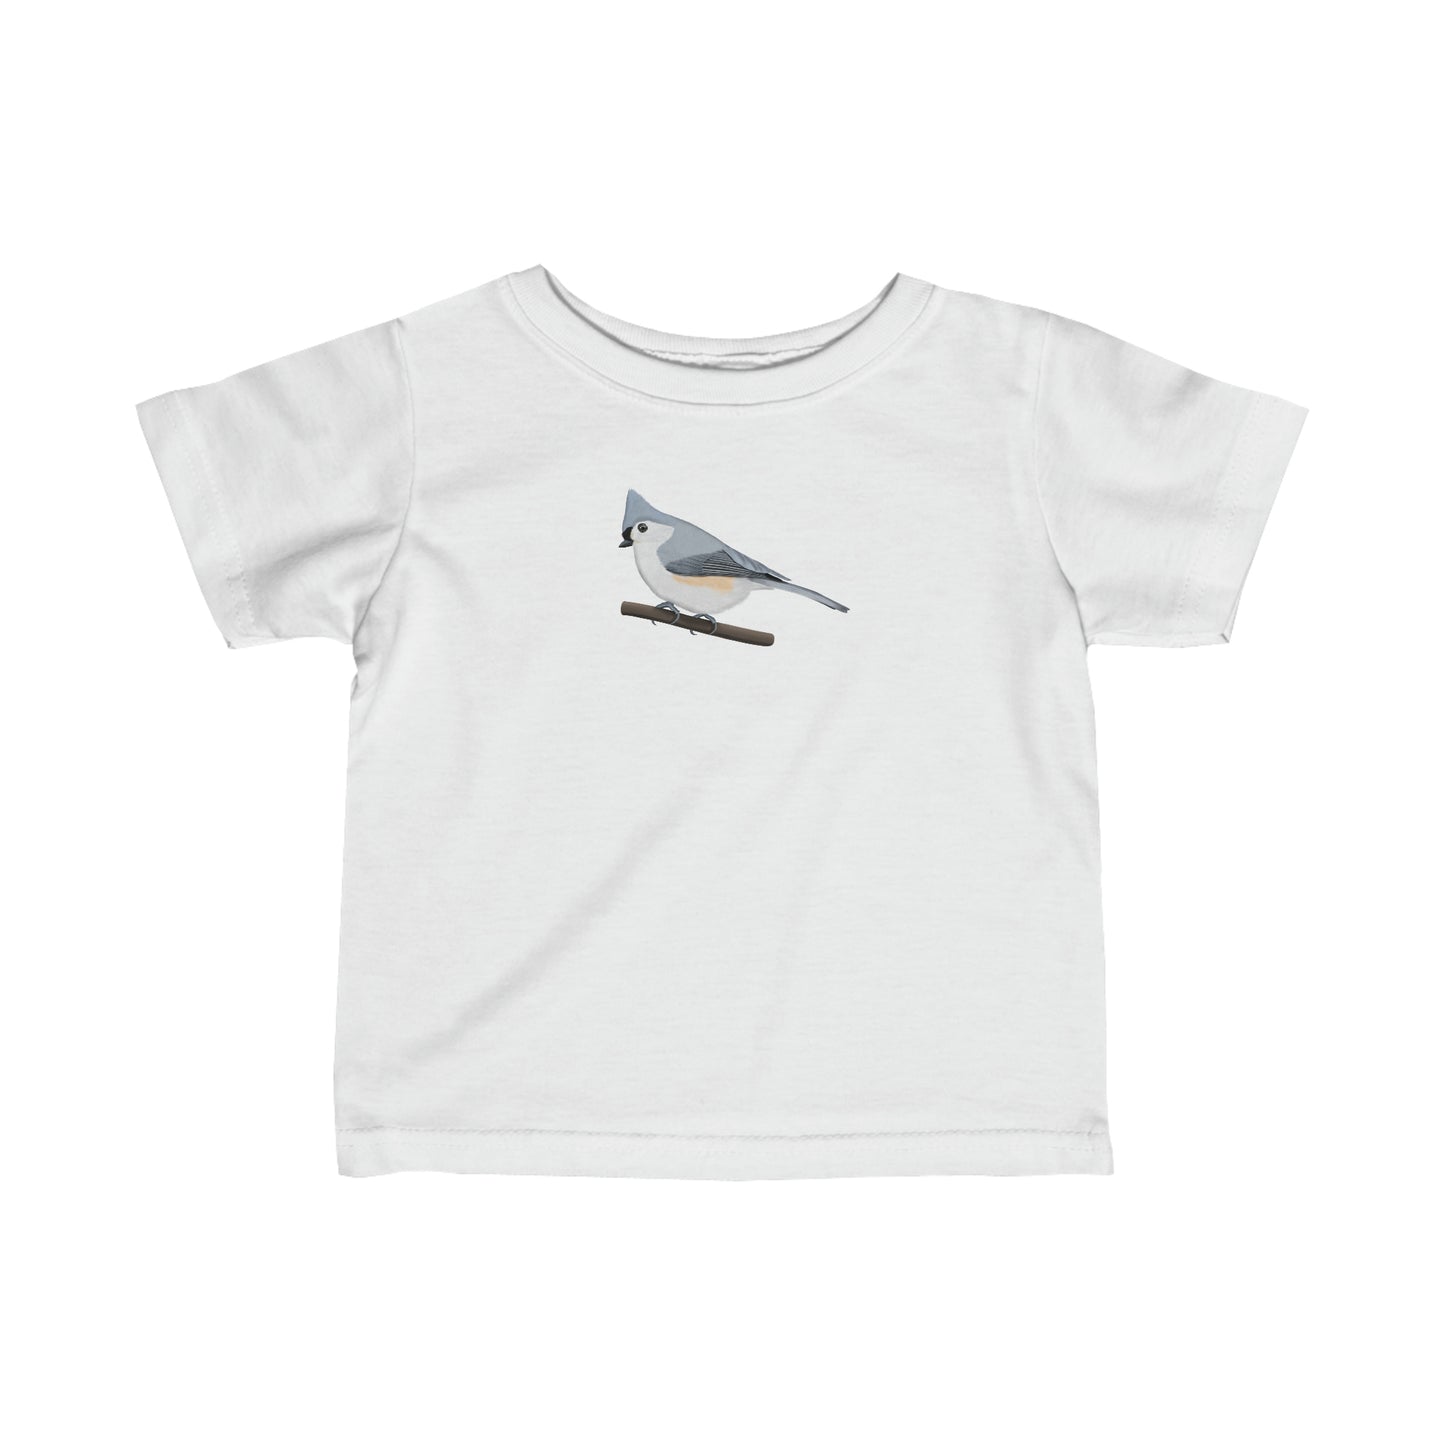 tufted titmouse bird toddler t-shirt